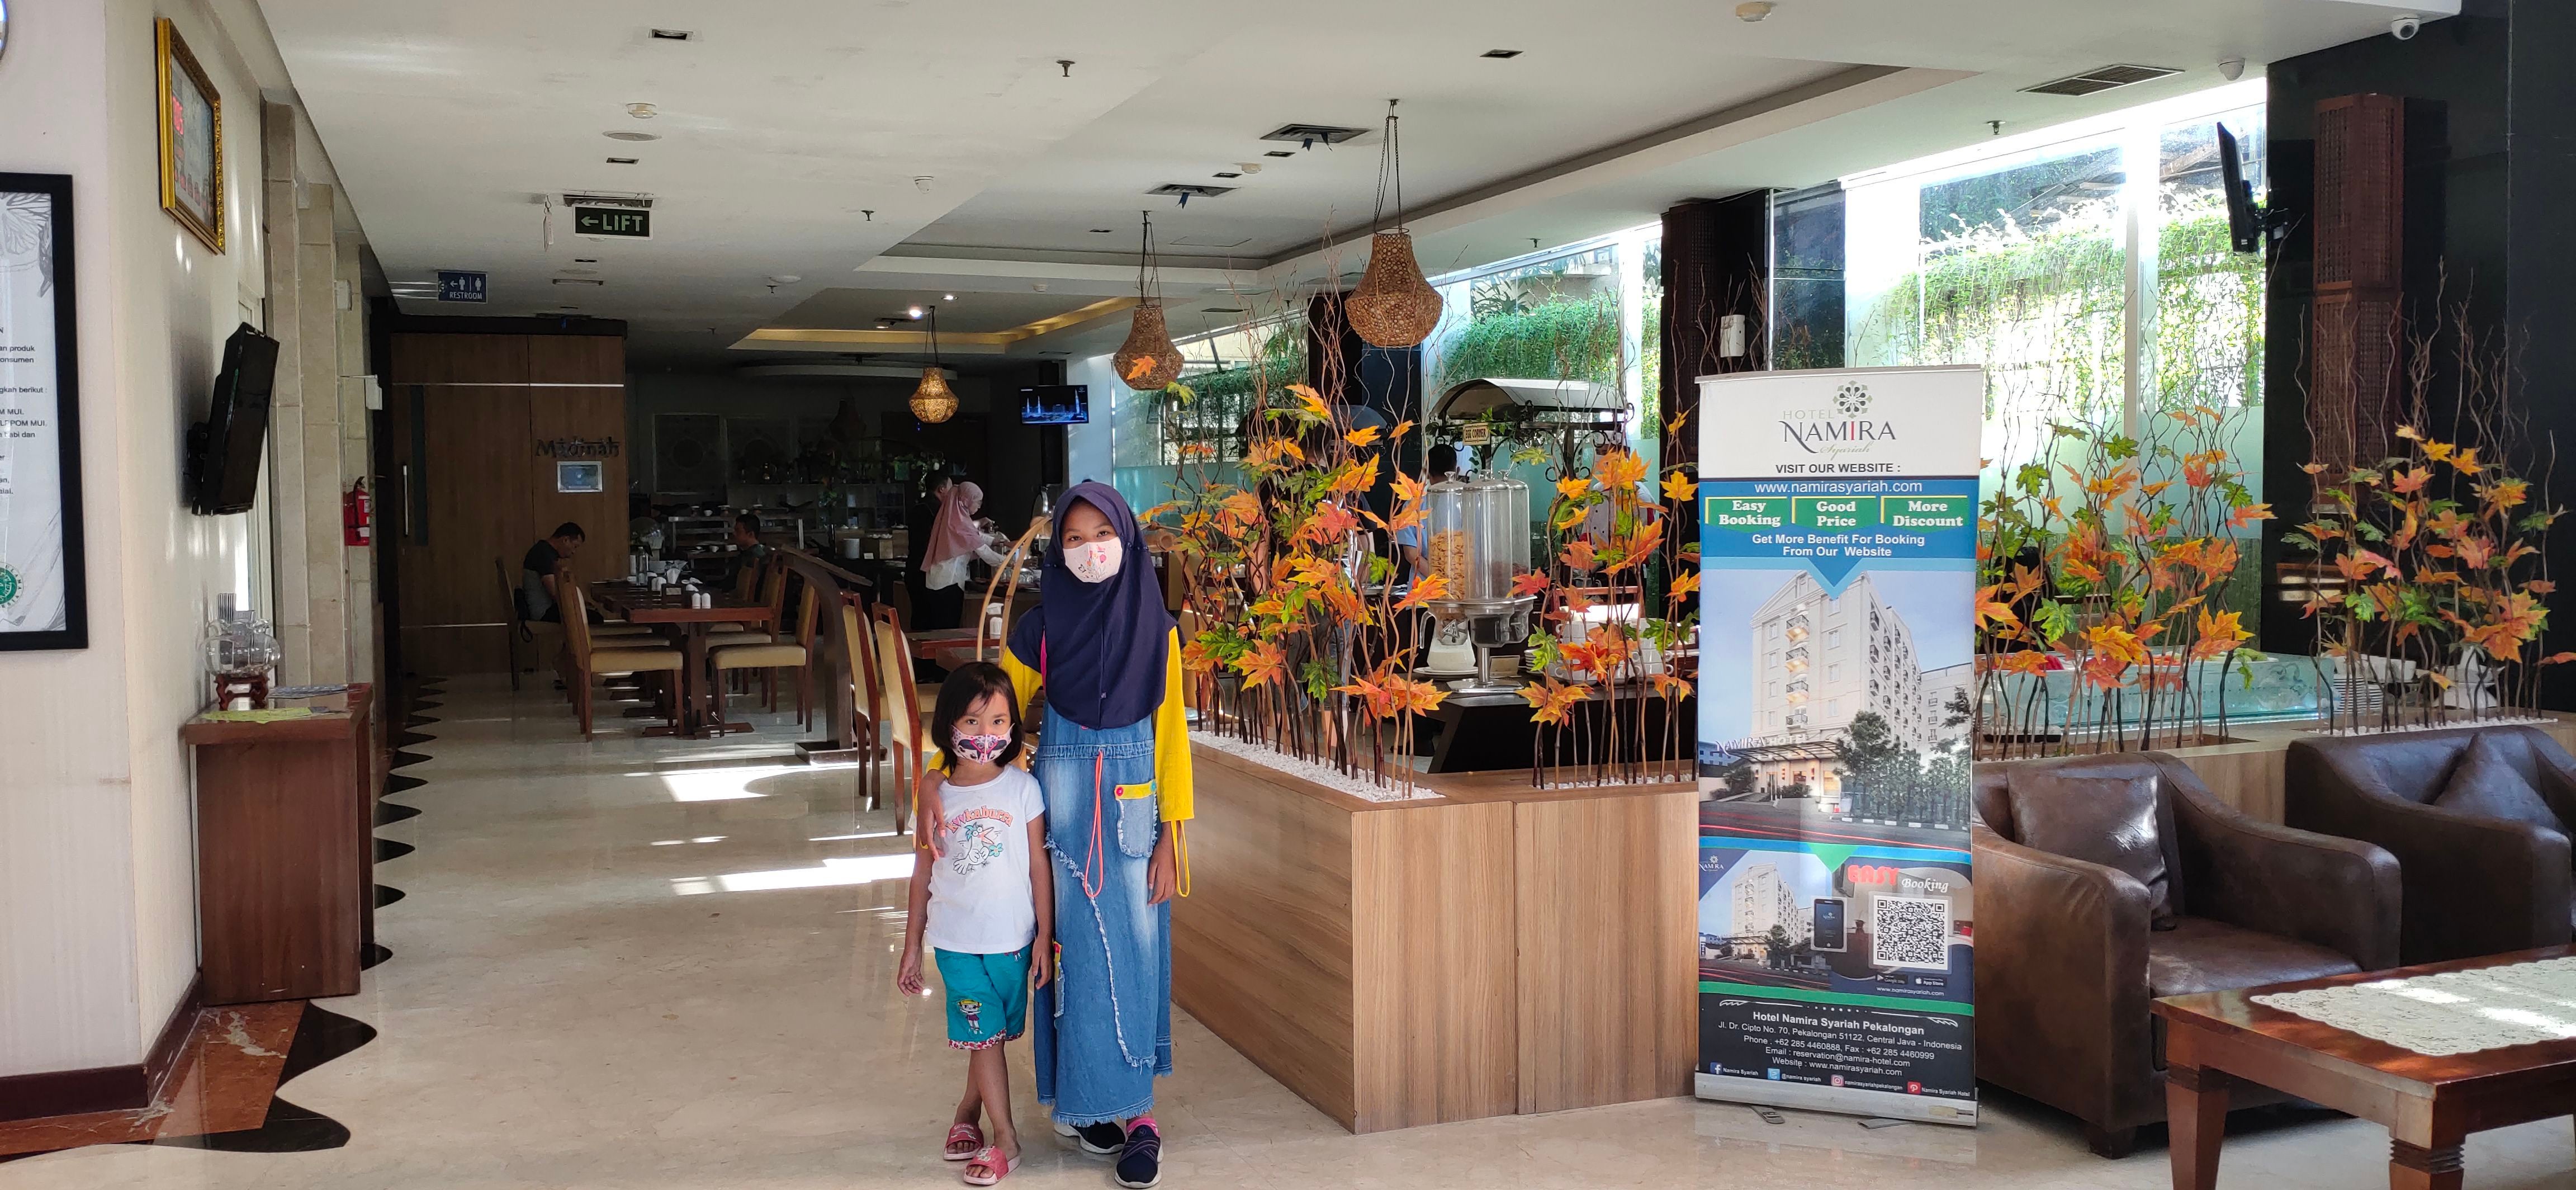 Hotel Namira Syariah Pekalongan, Pekalongan Booking Murah di